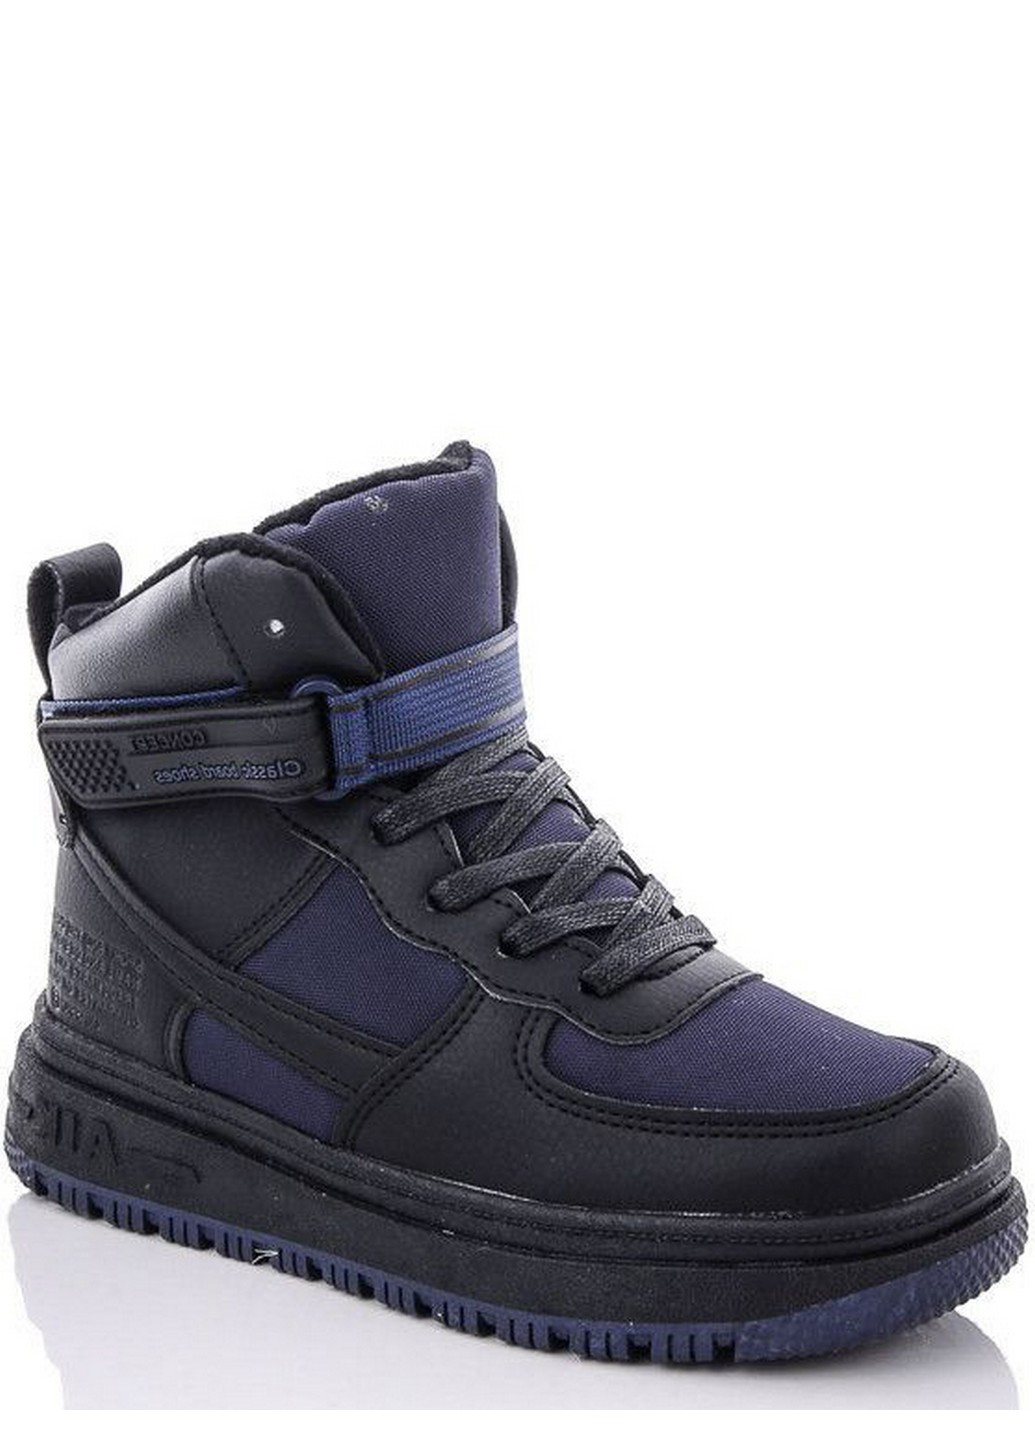 Синие кэжуал осенние зимние ботинки на овчине n40226-1 Jong Golf